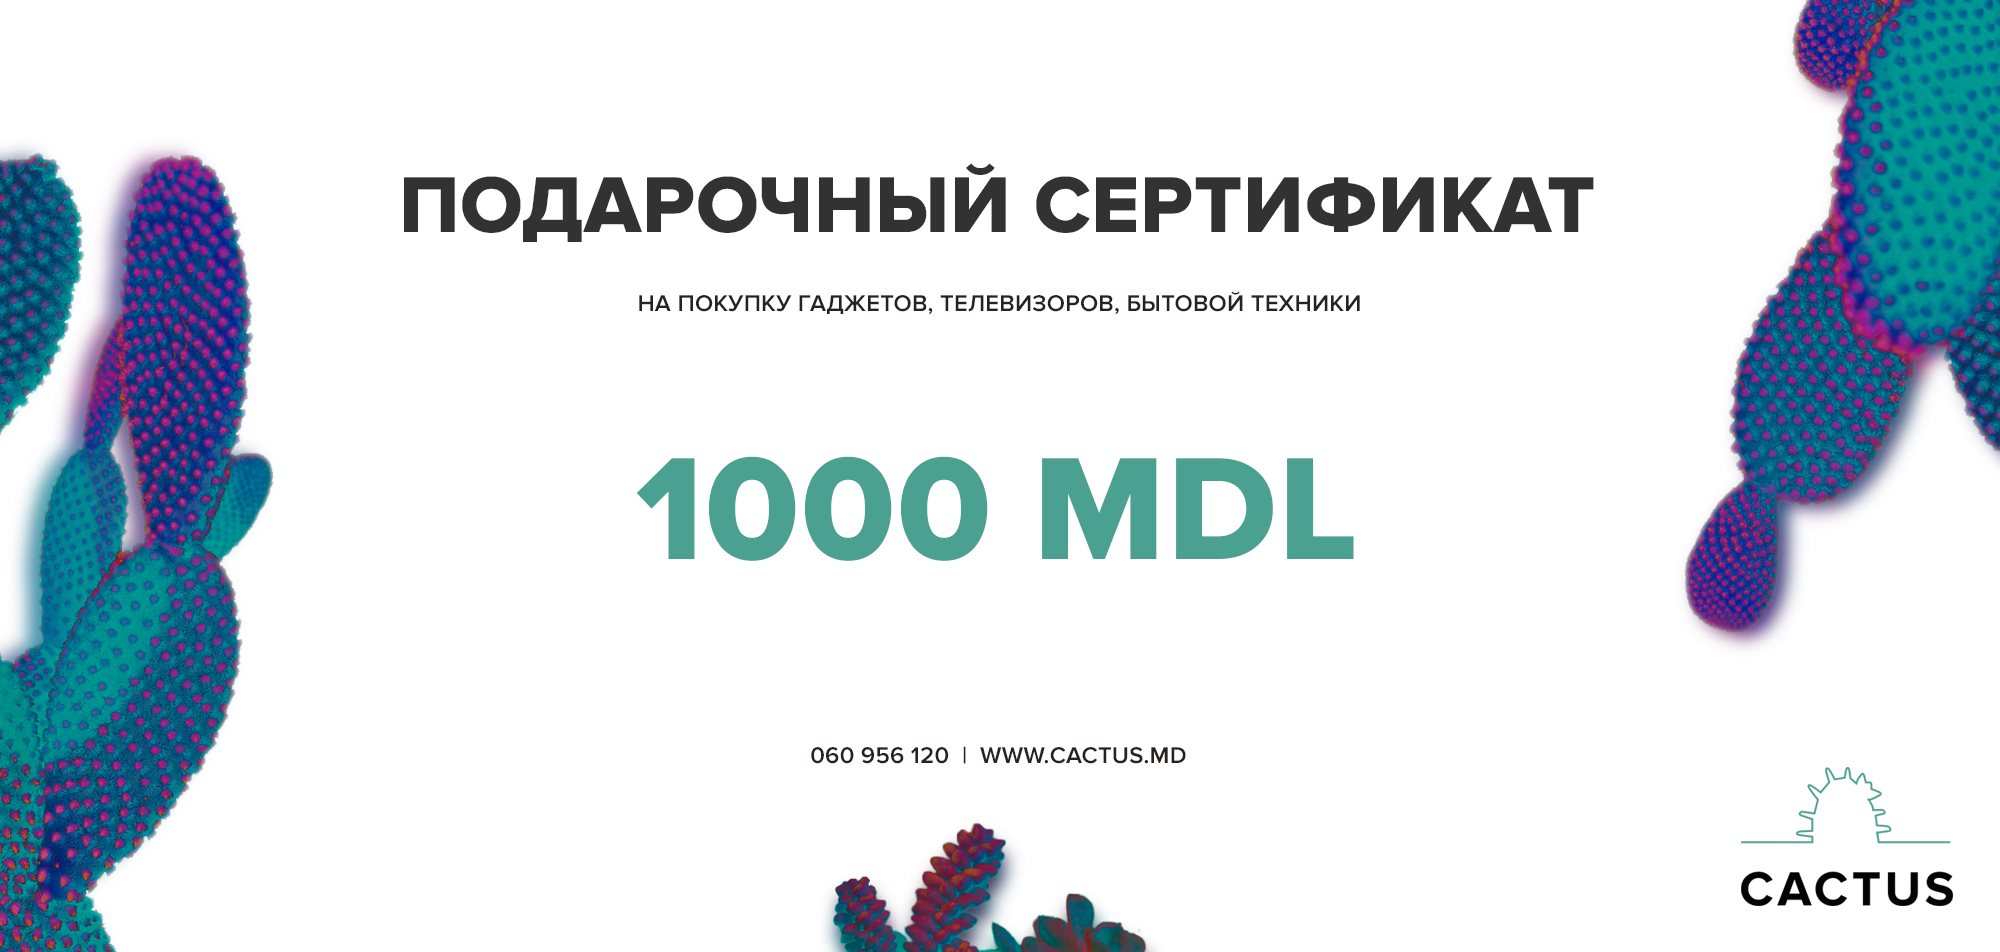 Certificat de cadou - 1000 mdl